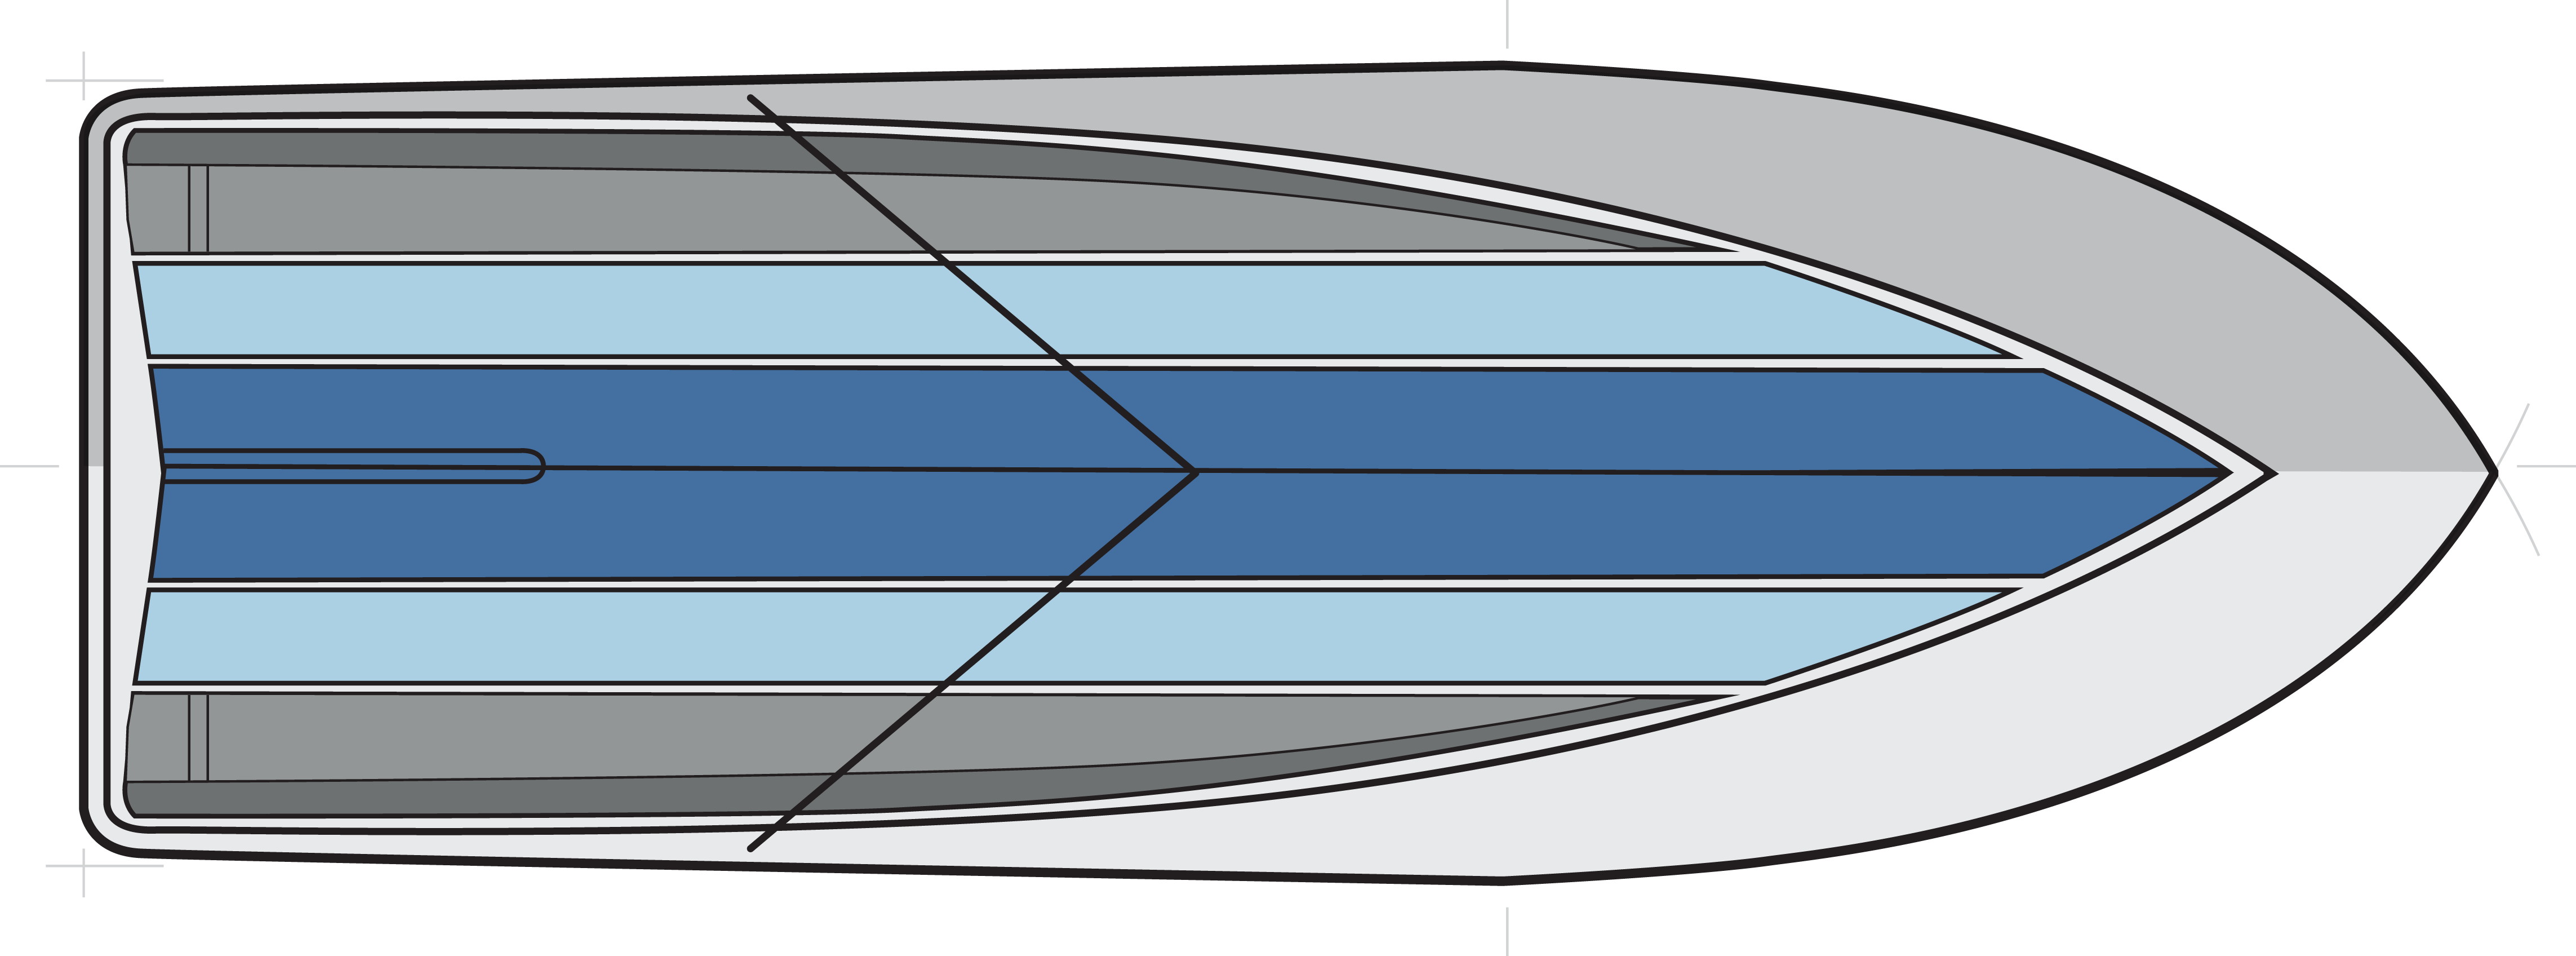 Sailfish 316 DC, VDS bottom design, variable deadrise